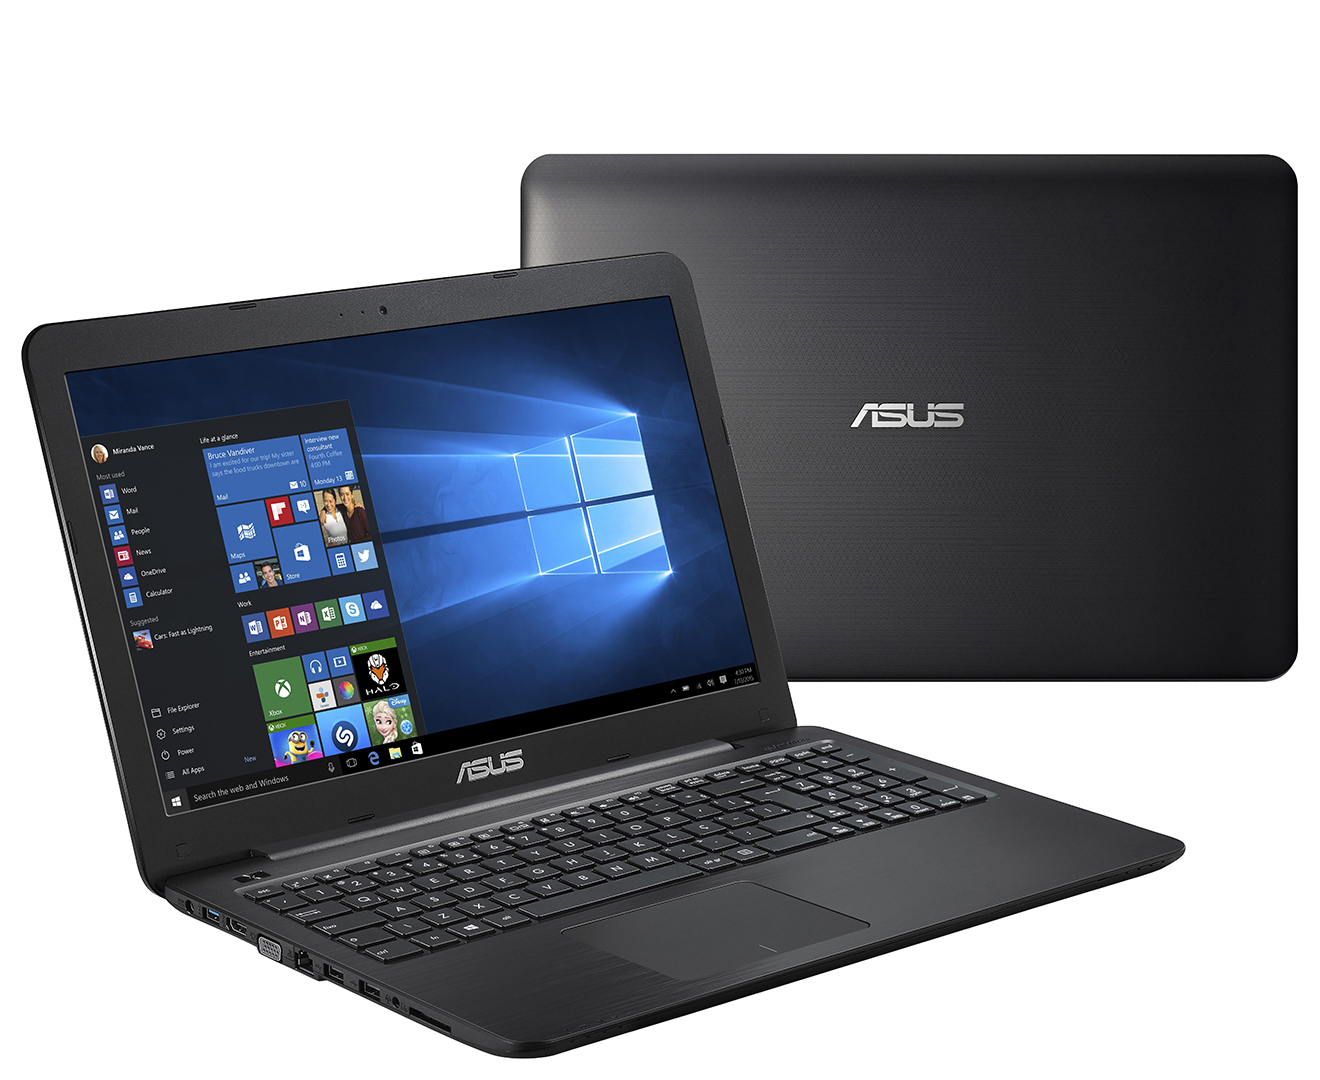 ASUS VivoBook 15.6-Inch 8GB 1TB Notebook - Black | Catch.com.au